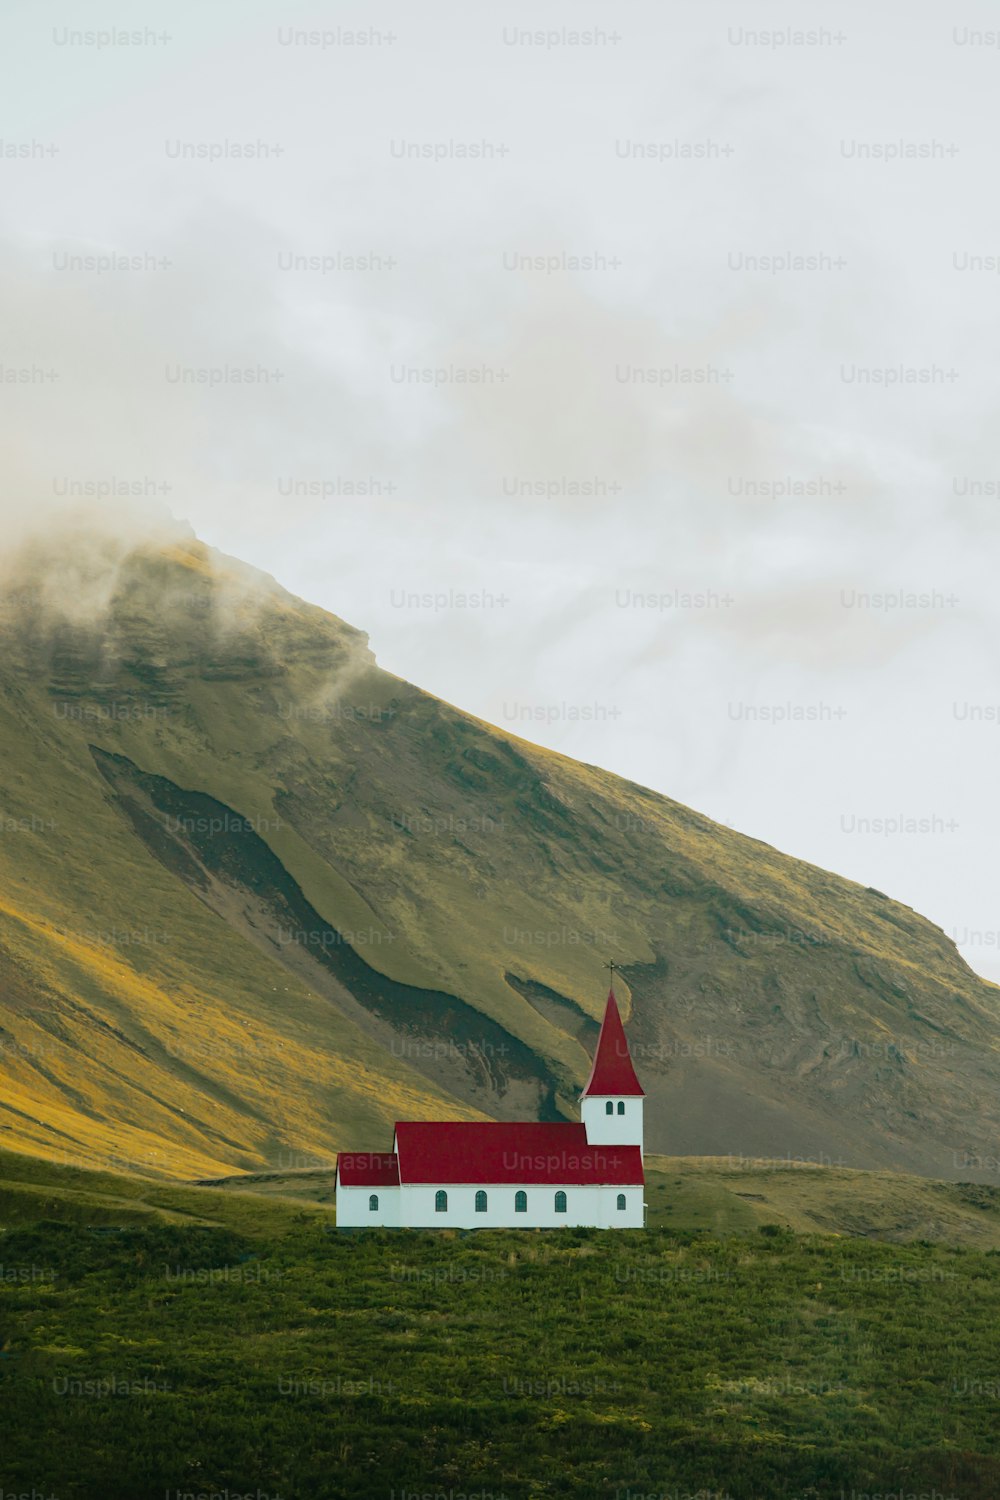 Une église rouge et blanche sur une colline verdoyante